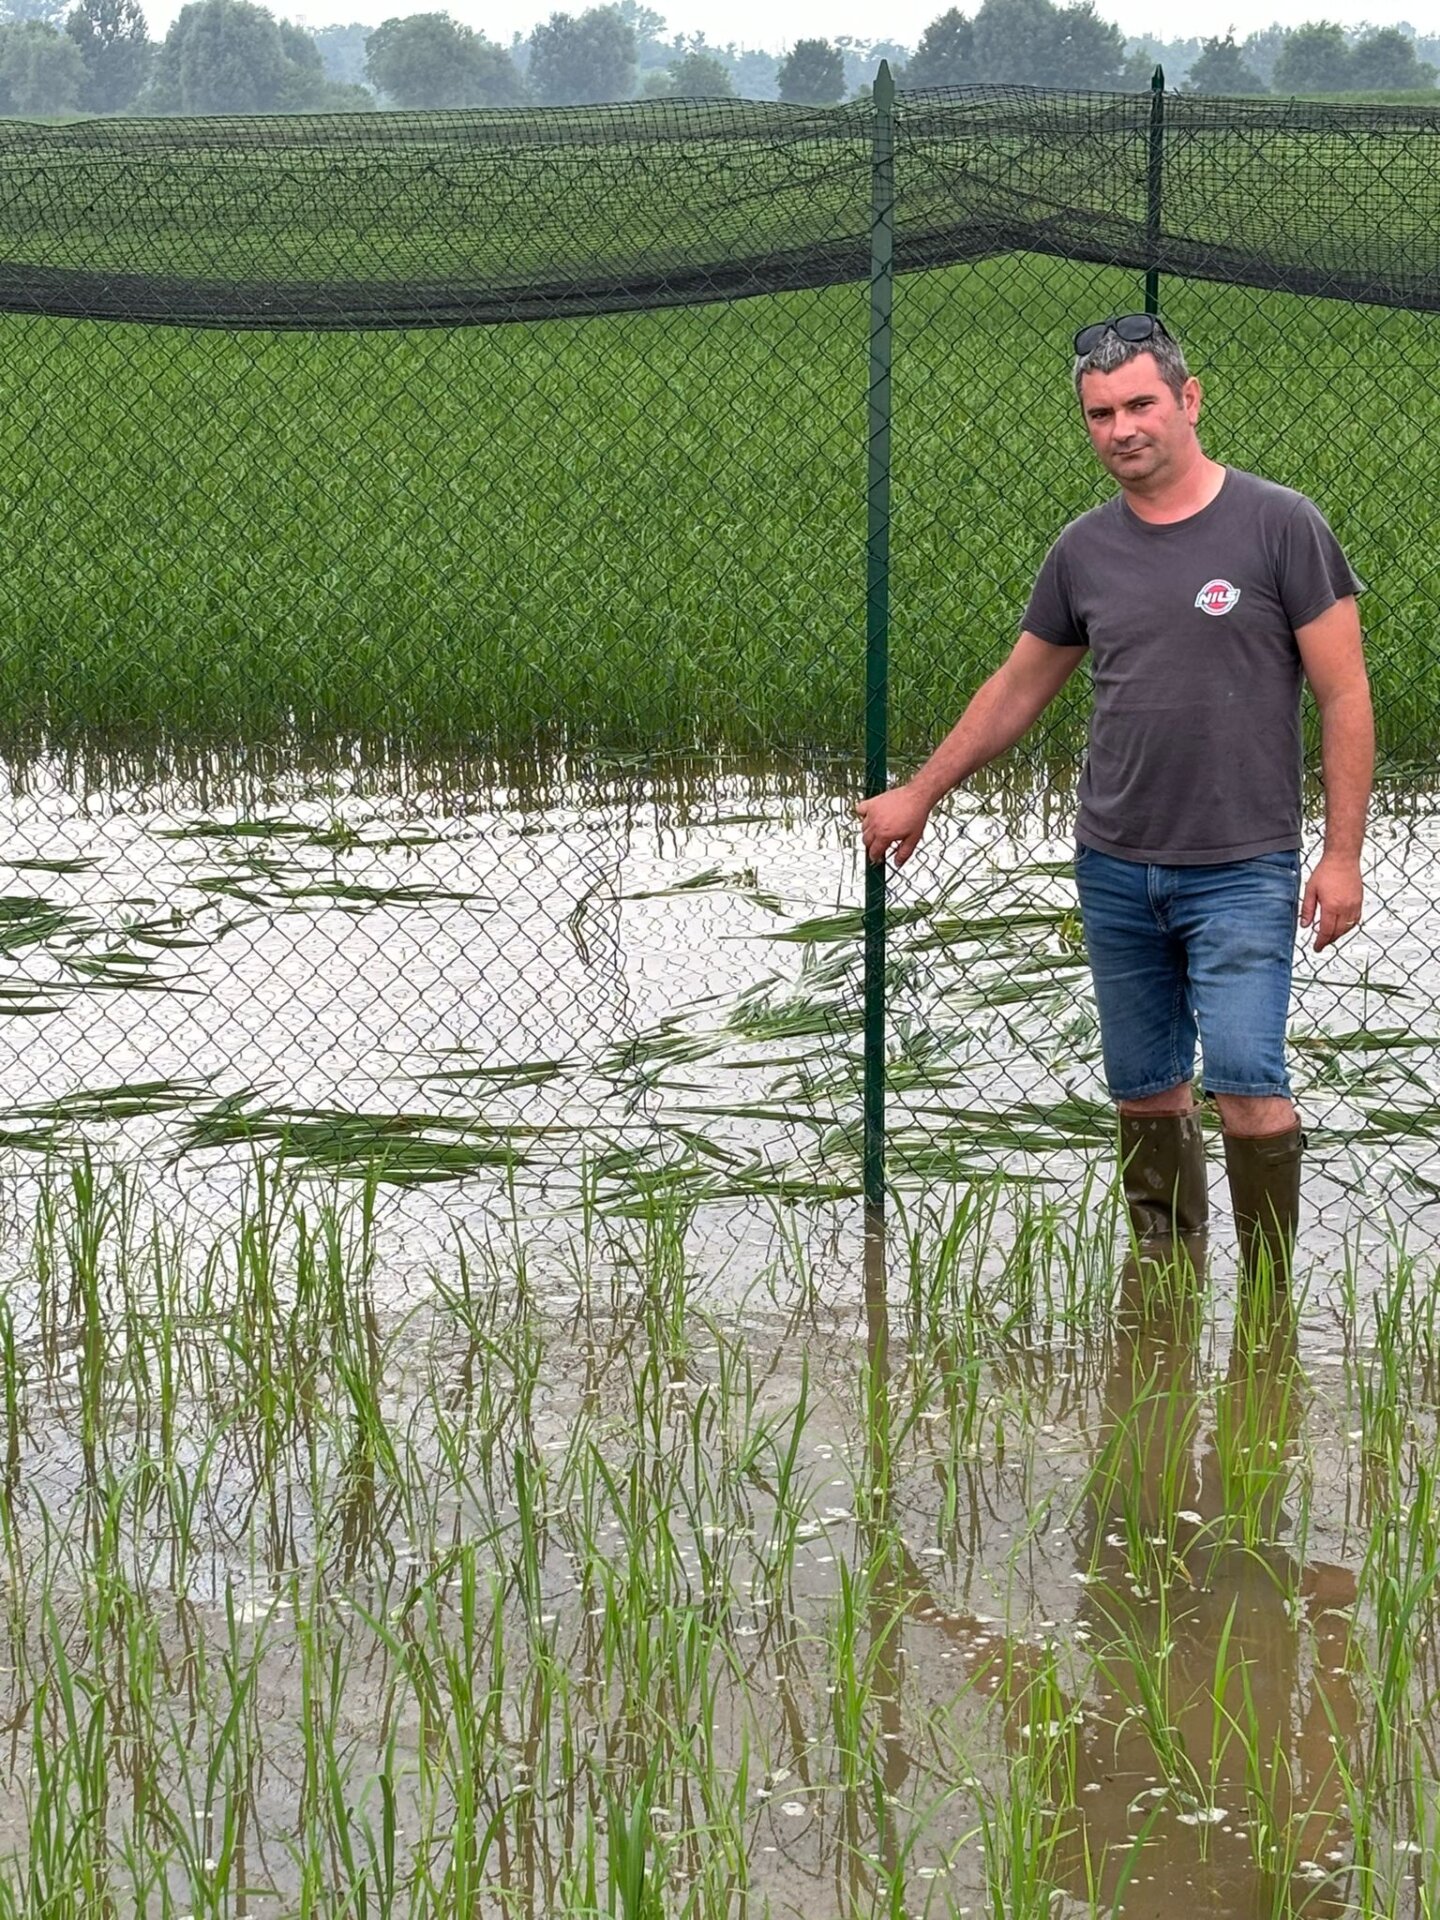 Distrutto un campo di riso 'sperimentale' da ignoti, la Regione Lombardia: "Atto criminale contro la scienza"